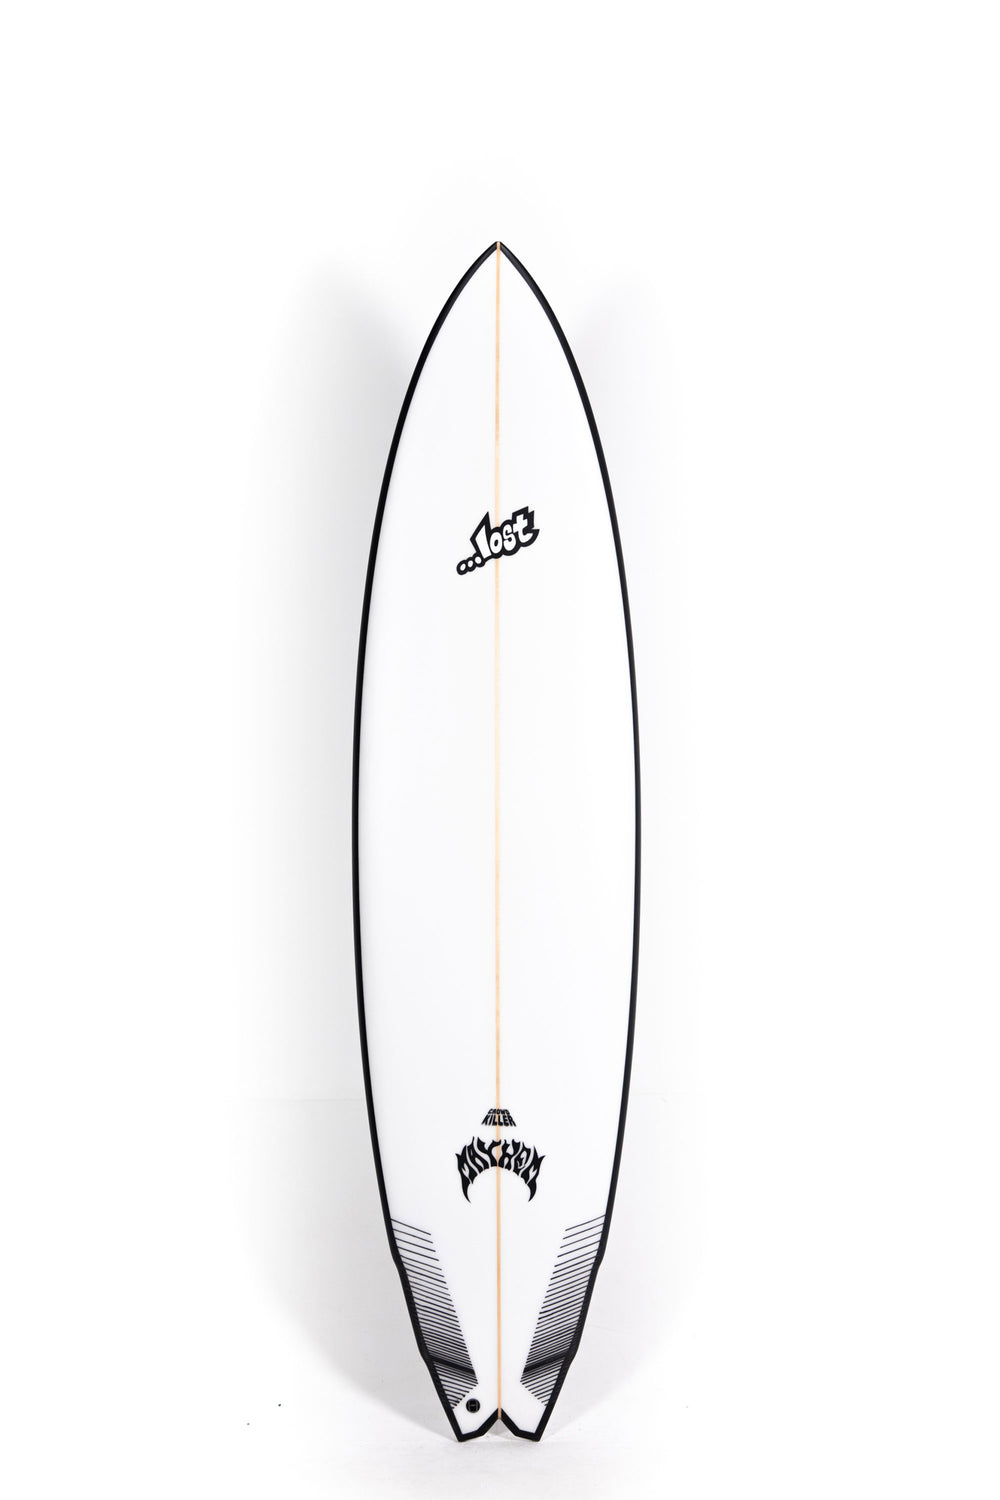 Pukas-Surf-Shop-Lost-Surfboards-Crowd-Killer-Matt-Biolos-7_6